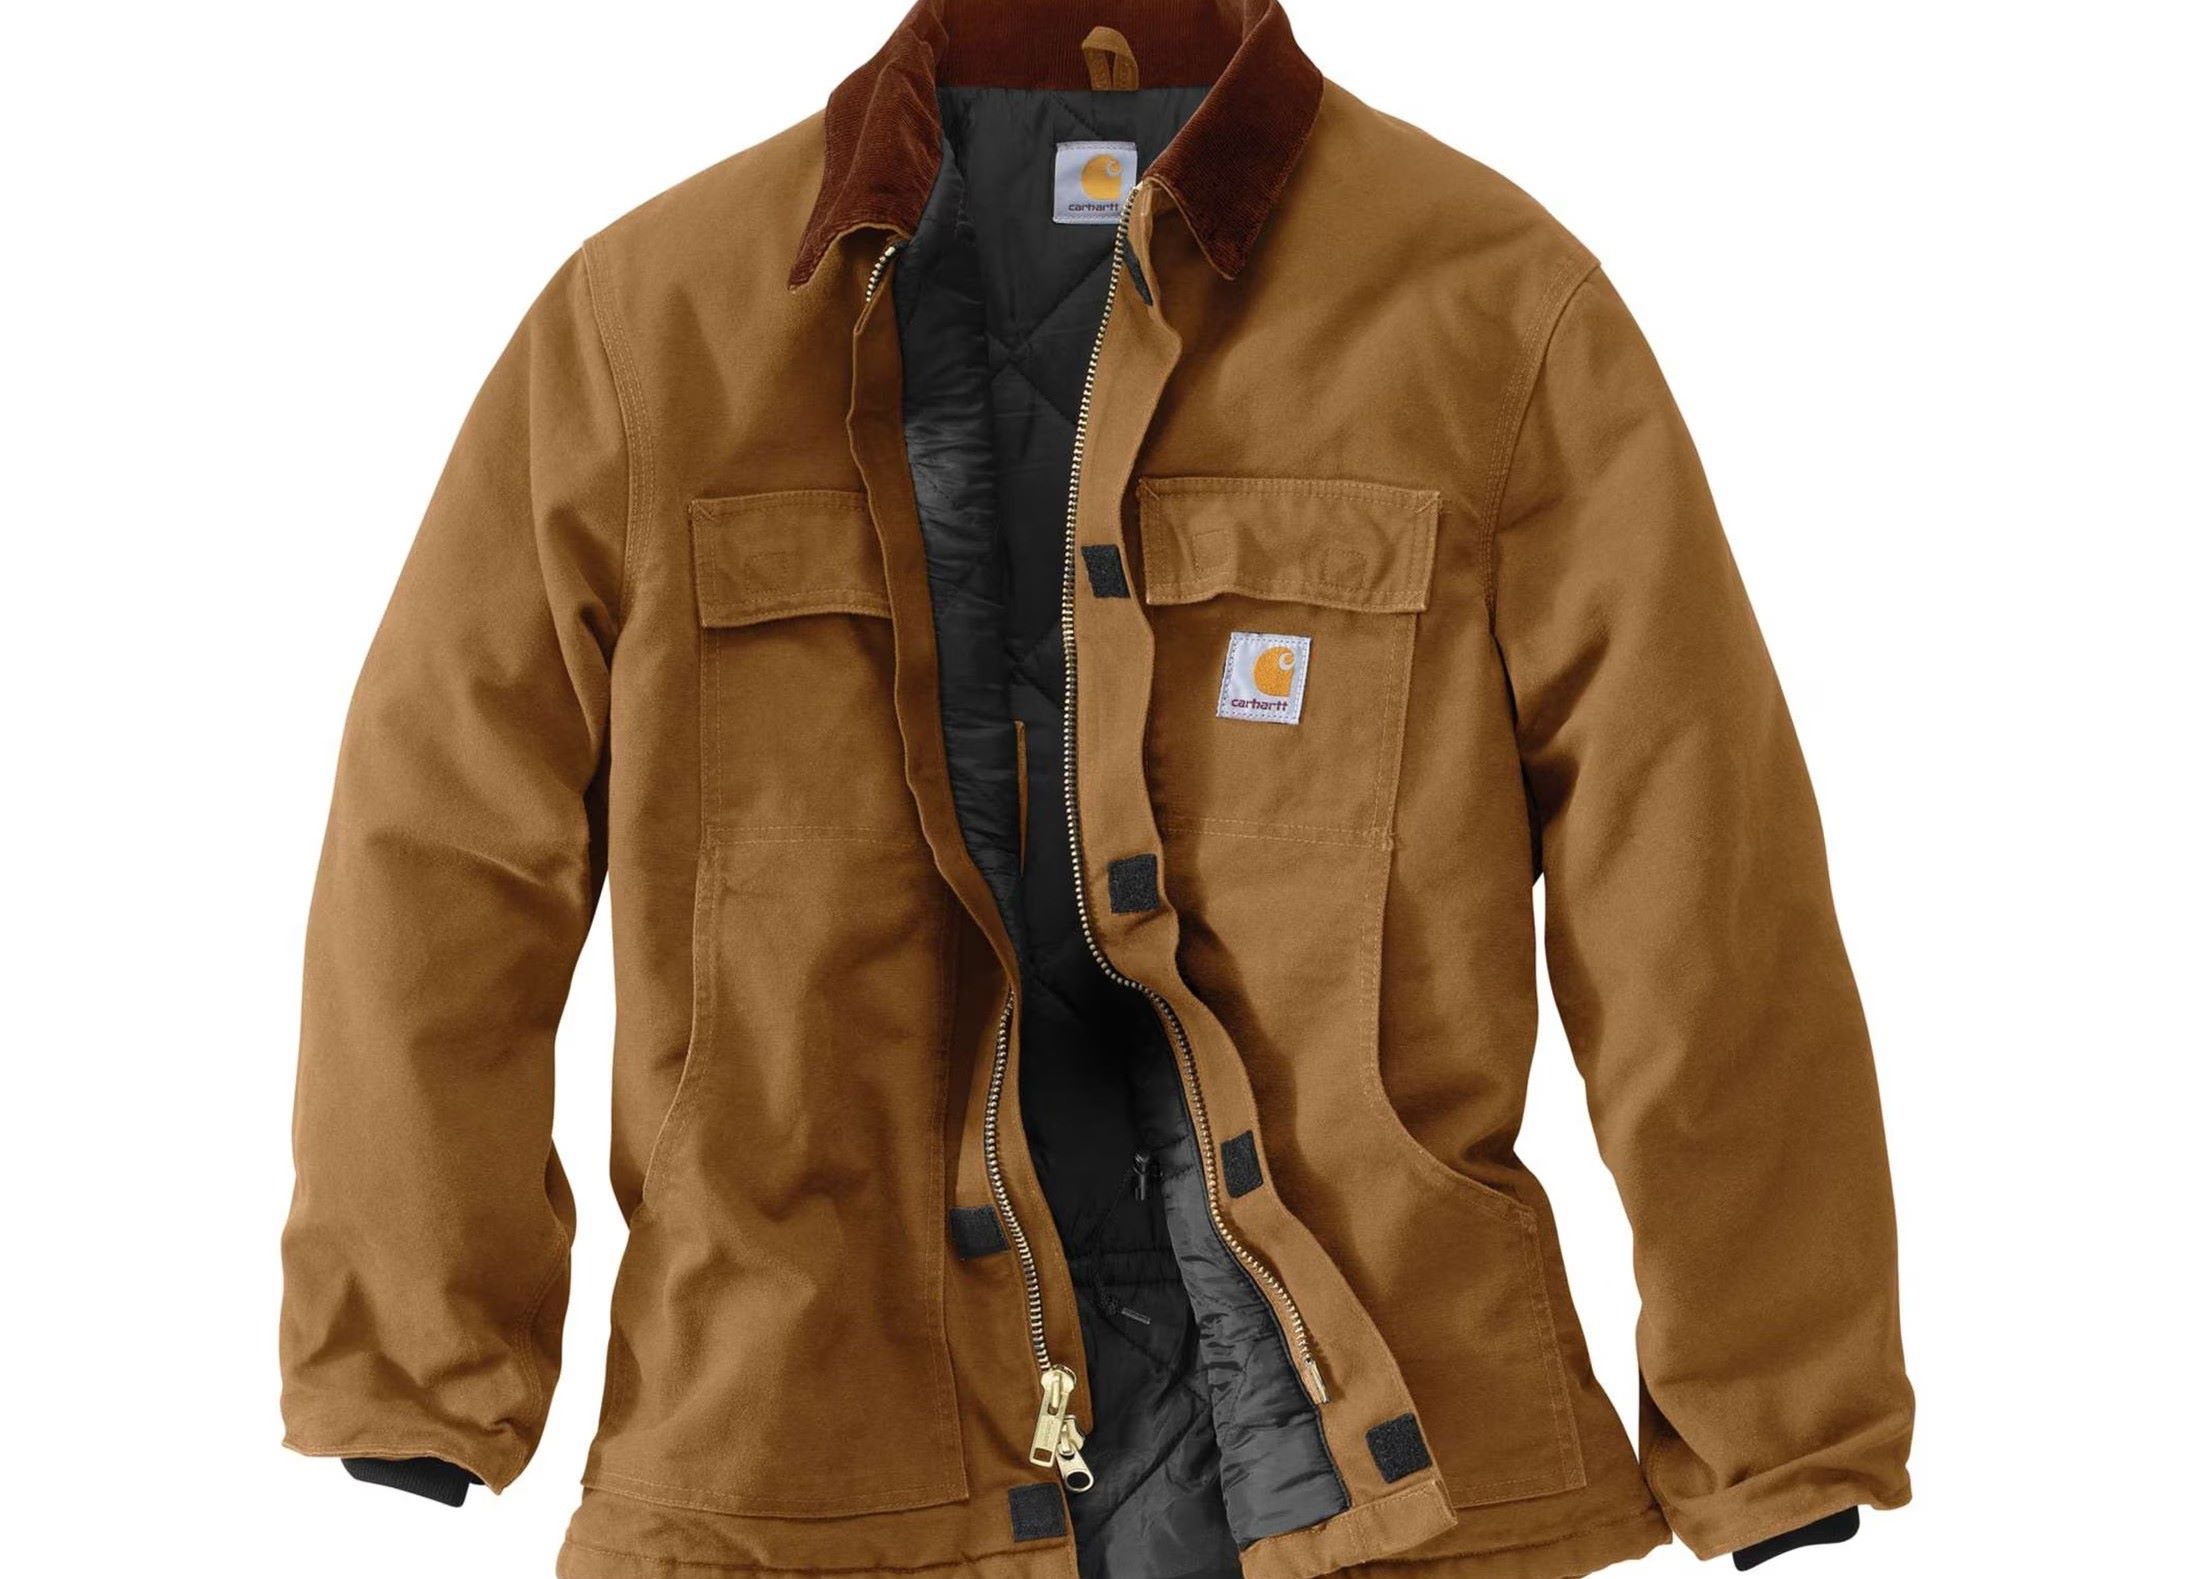 10-best-carhartt-jackets-for-men